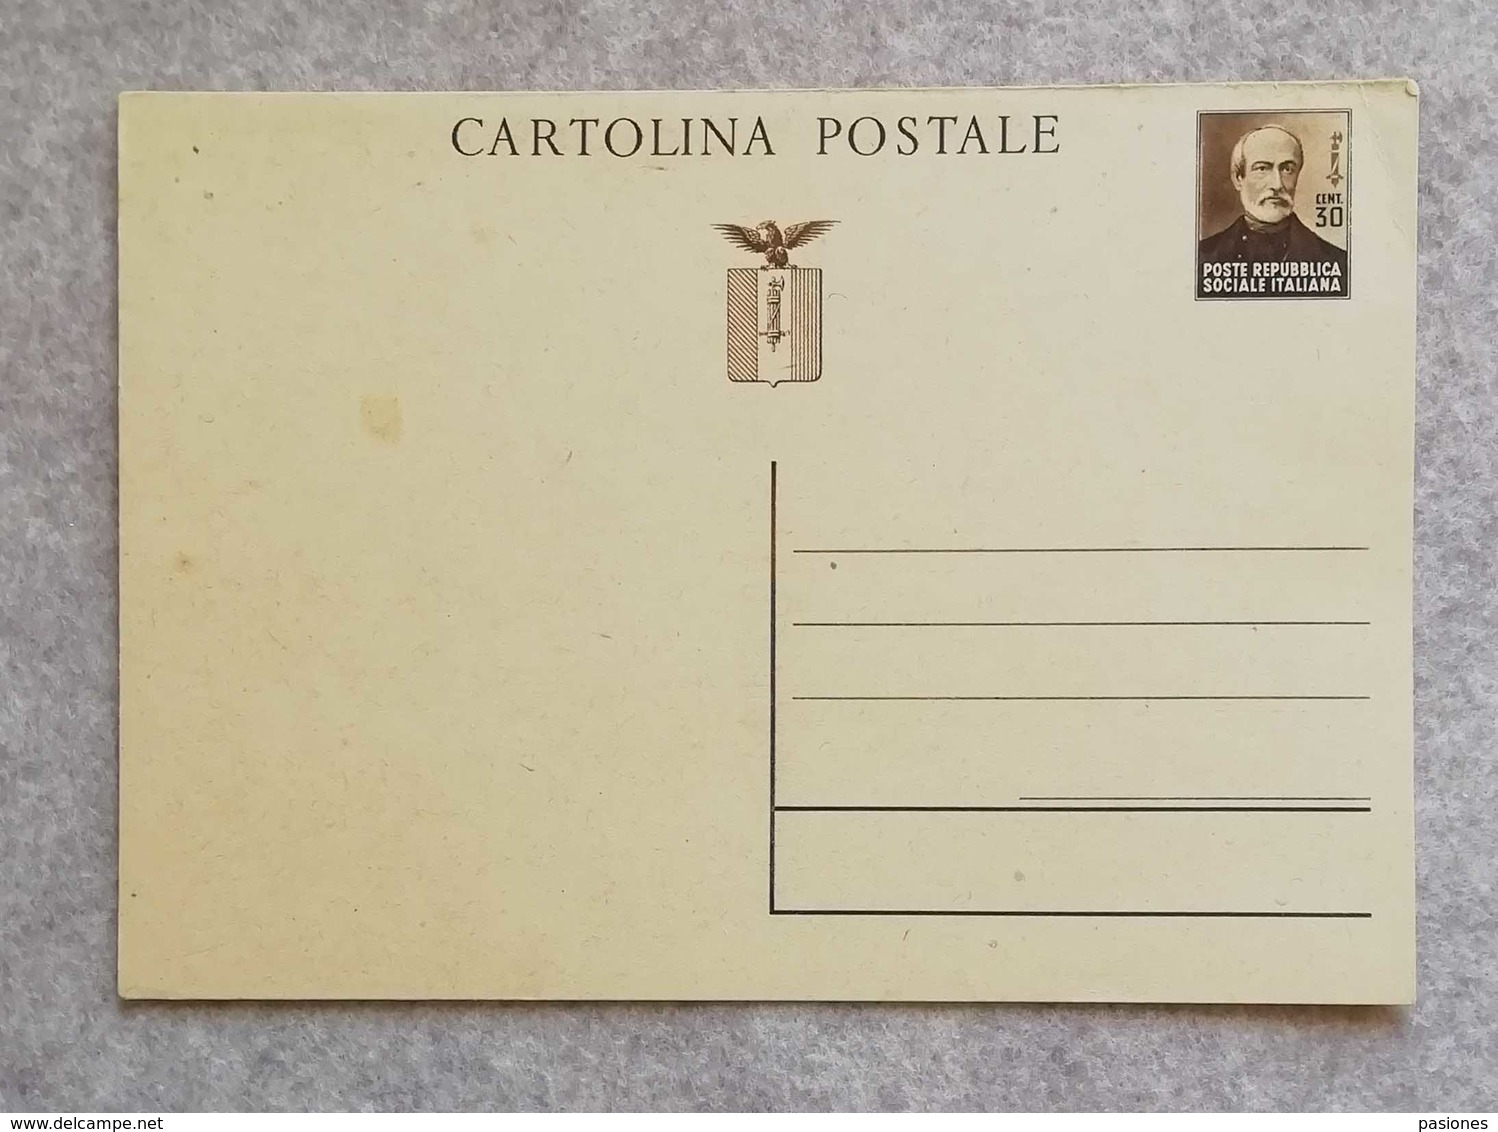 Cartolina Postale Da 30 Cent. "Giuseppe Mazzini" RSI - Non Viaggiata - Stamped Stationery